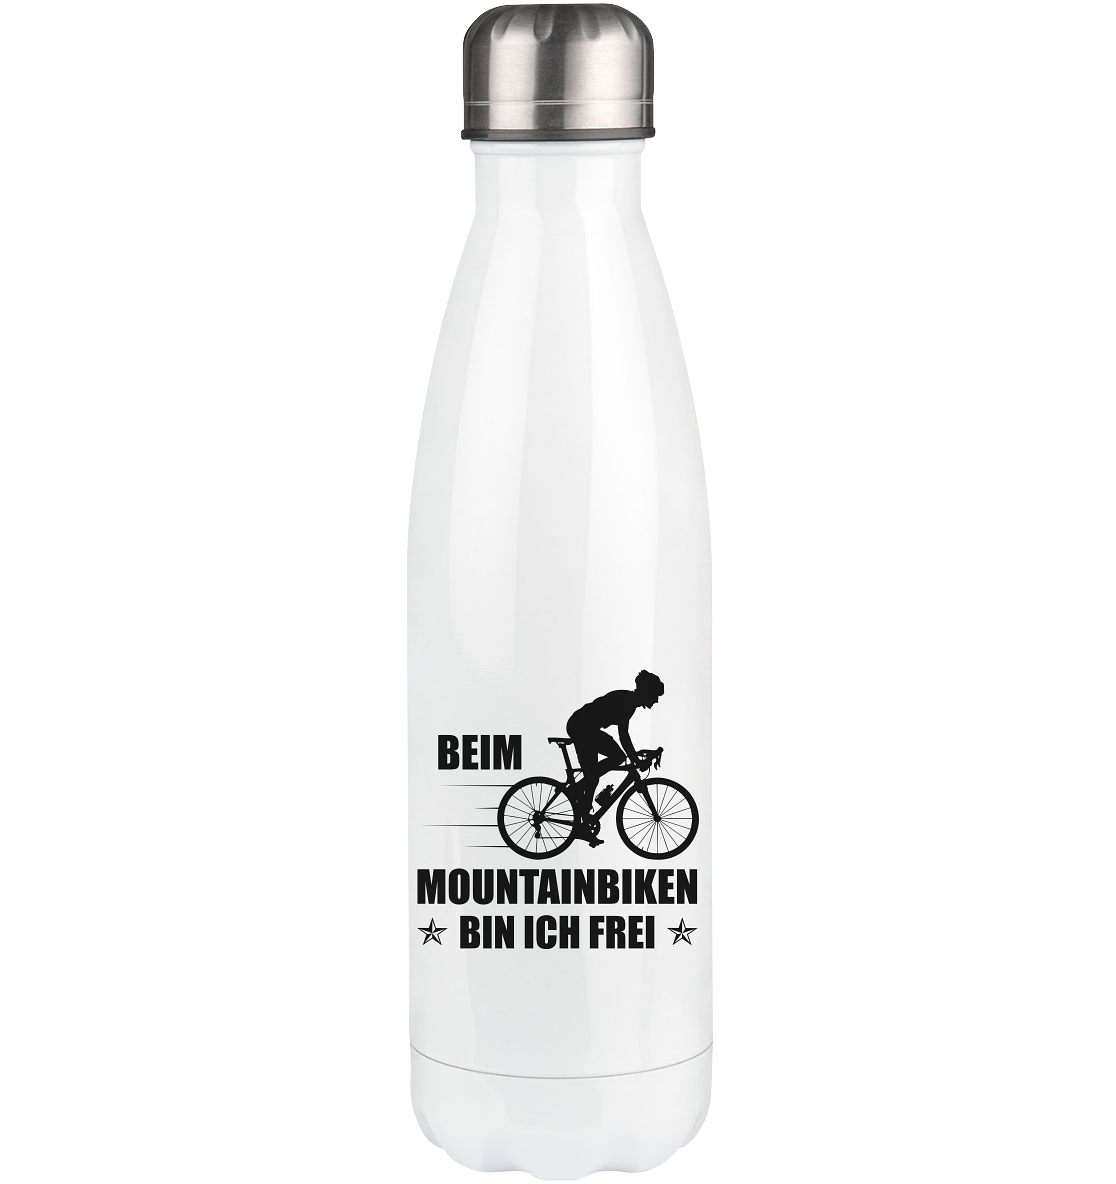 Beim Mountainbiken Bin Ich Frei 2 - Edelstahl Thermosflasche fahrrad 500ml